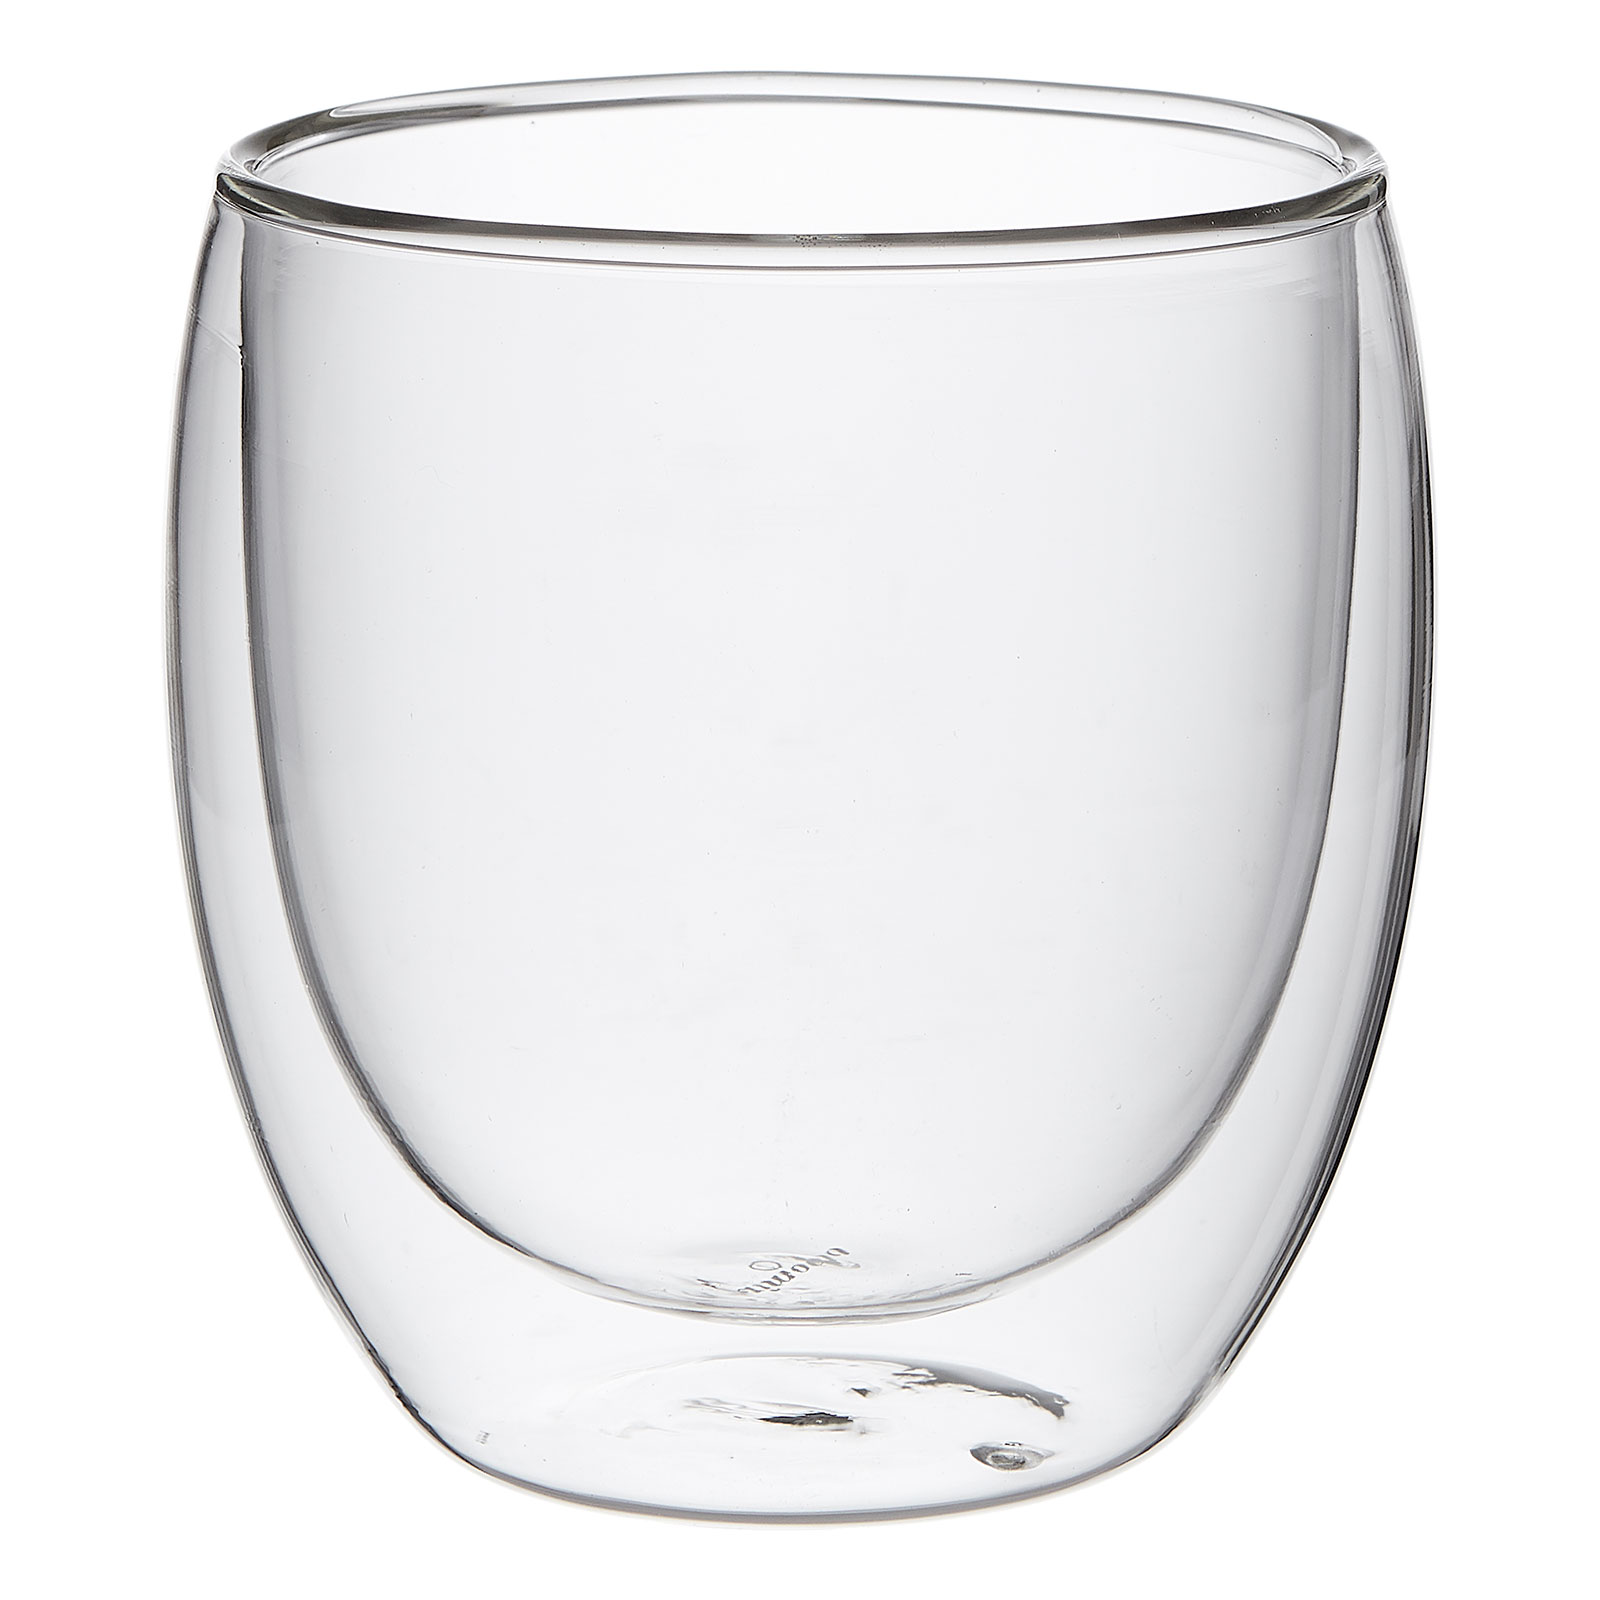 Teeglas-Set Assam von Holzapfel GmbH & Cie. KG